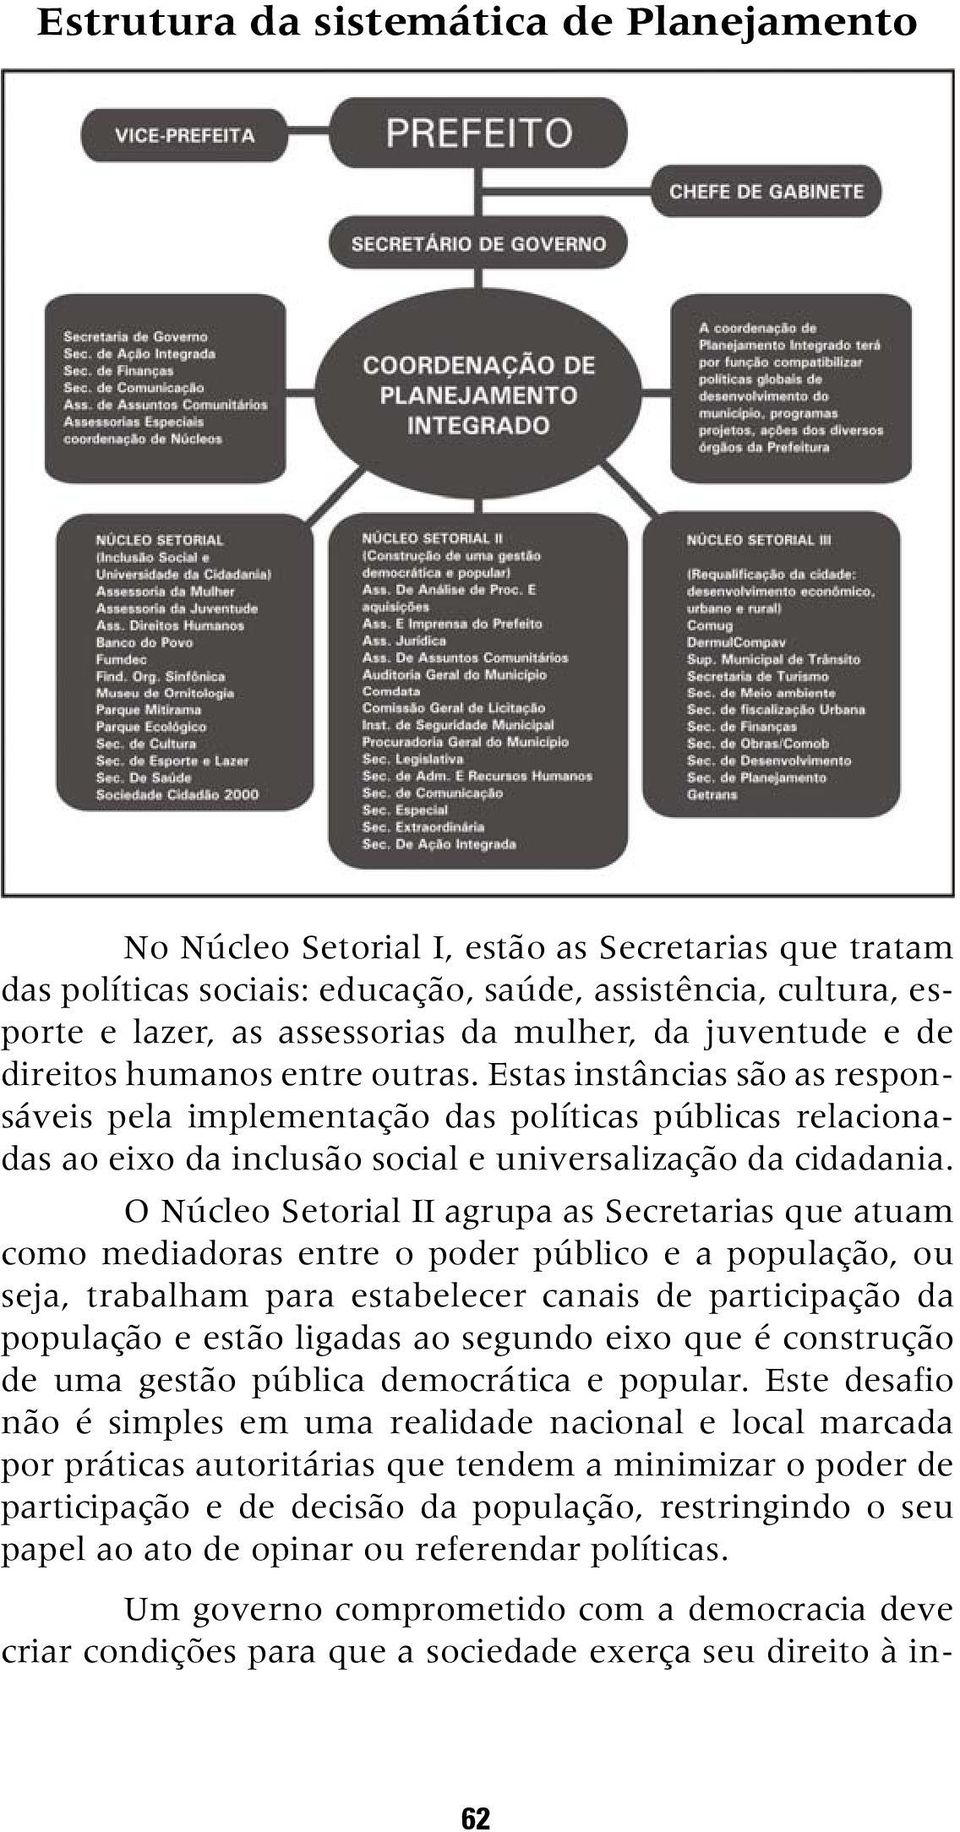 O Núcleo Setorial II agrupa as Secretarias que atuam como mediadoras entre o poder público e a população, ou seja, trabalham para estabelecer canais de participação da população e estão ligadas ao